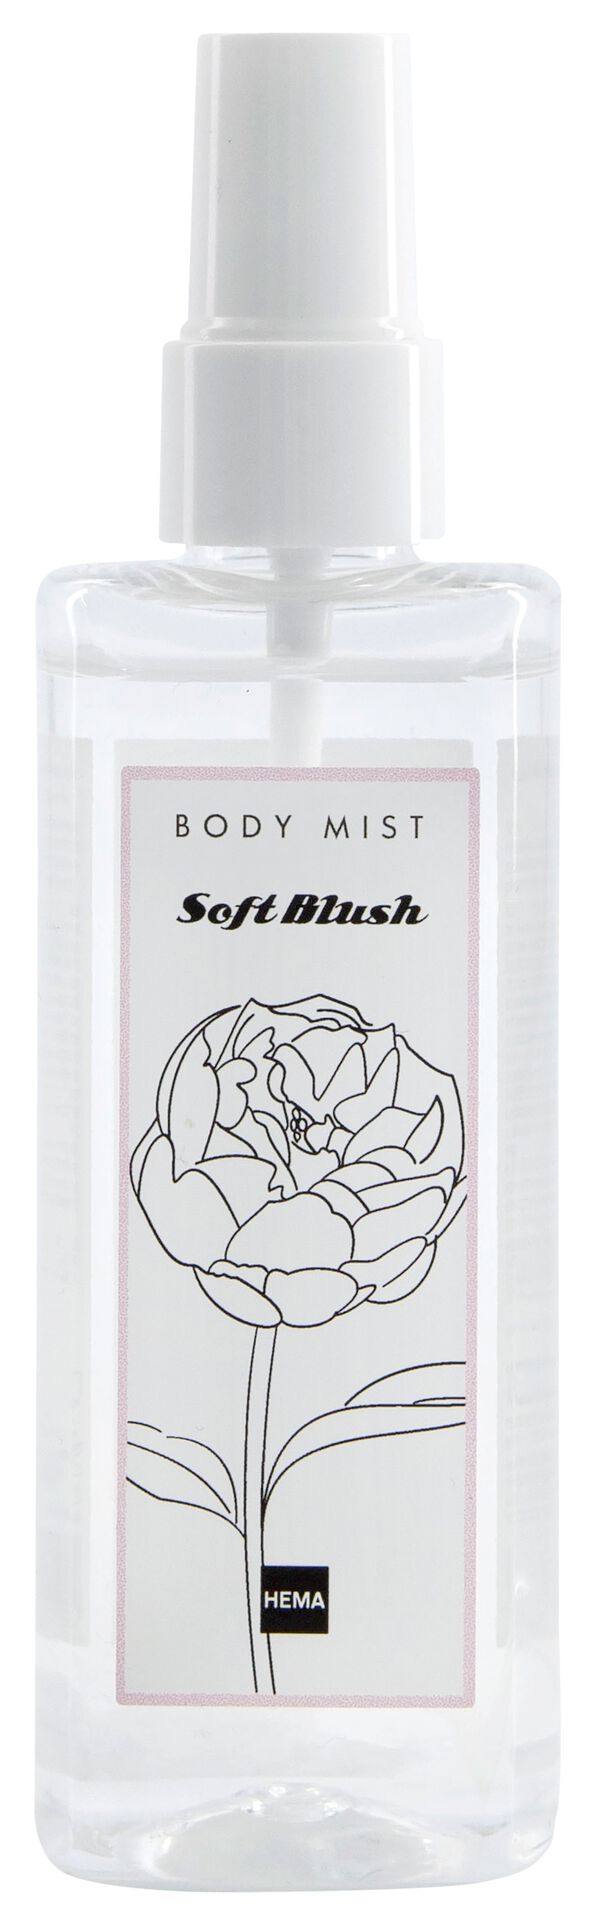 body mist soft blush natural 100ml - 11280011 - HEMA